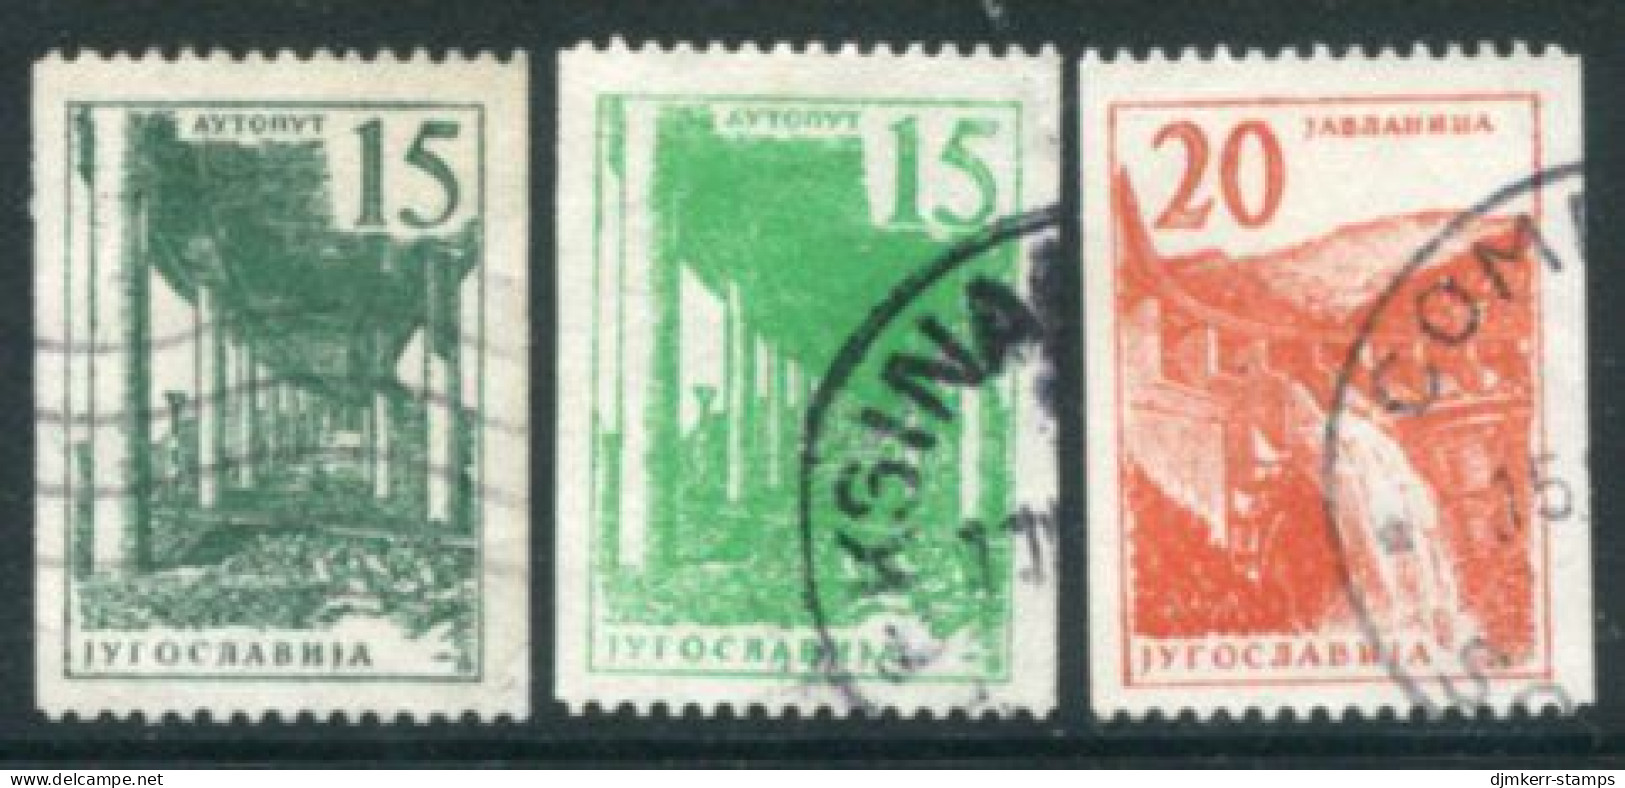 YUGOSLAVIA 1959 Definitive Coil Stamps  Used.  Michel 898a,b-899 - Oblitérés